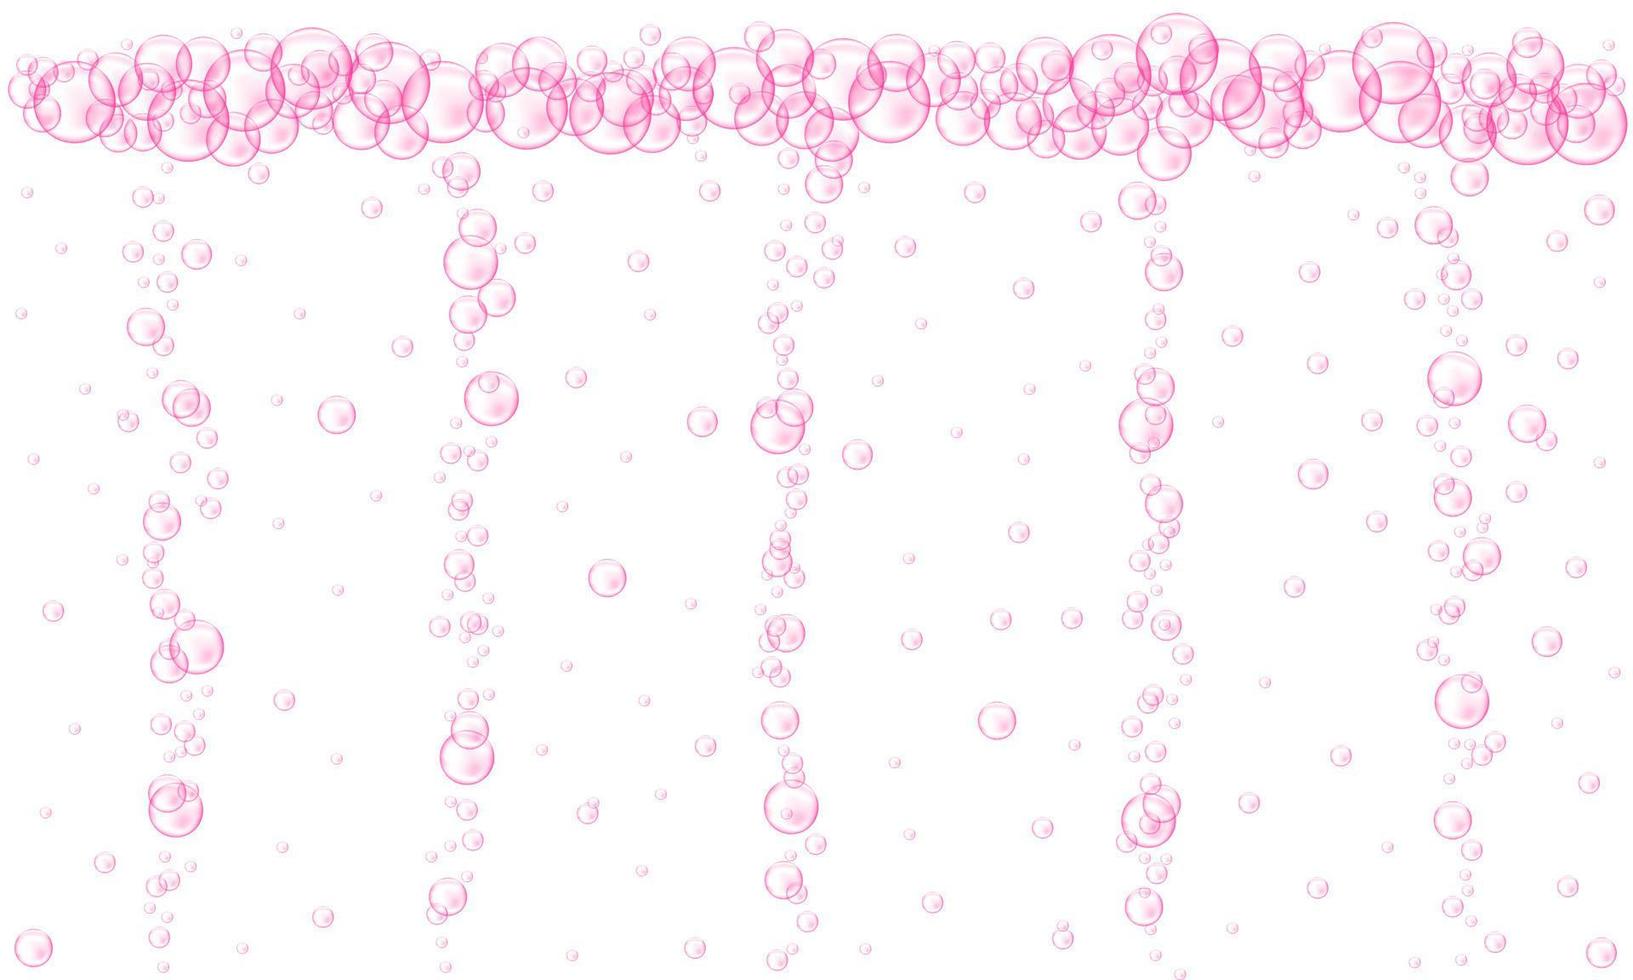 fluxo de bolhas rosa. textura de bebida carbonatada efervescente. Seltzer de cereja ou morango, cerveja, refrigerante, cola, limonada, champanhe, vinho espumante vetor